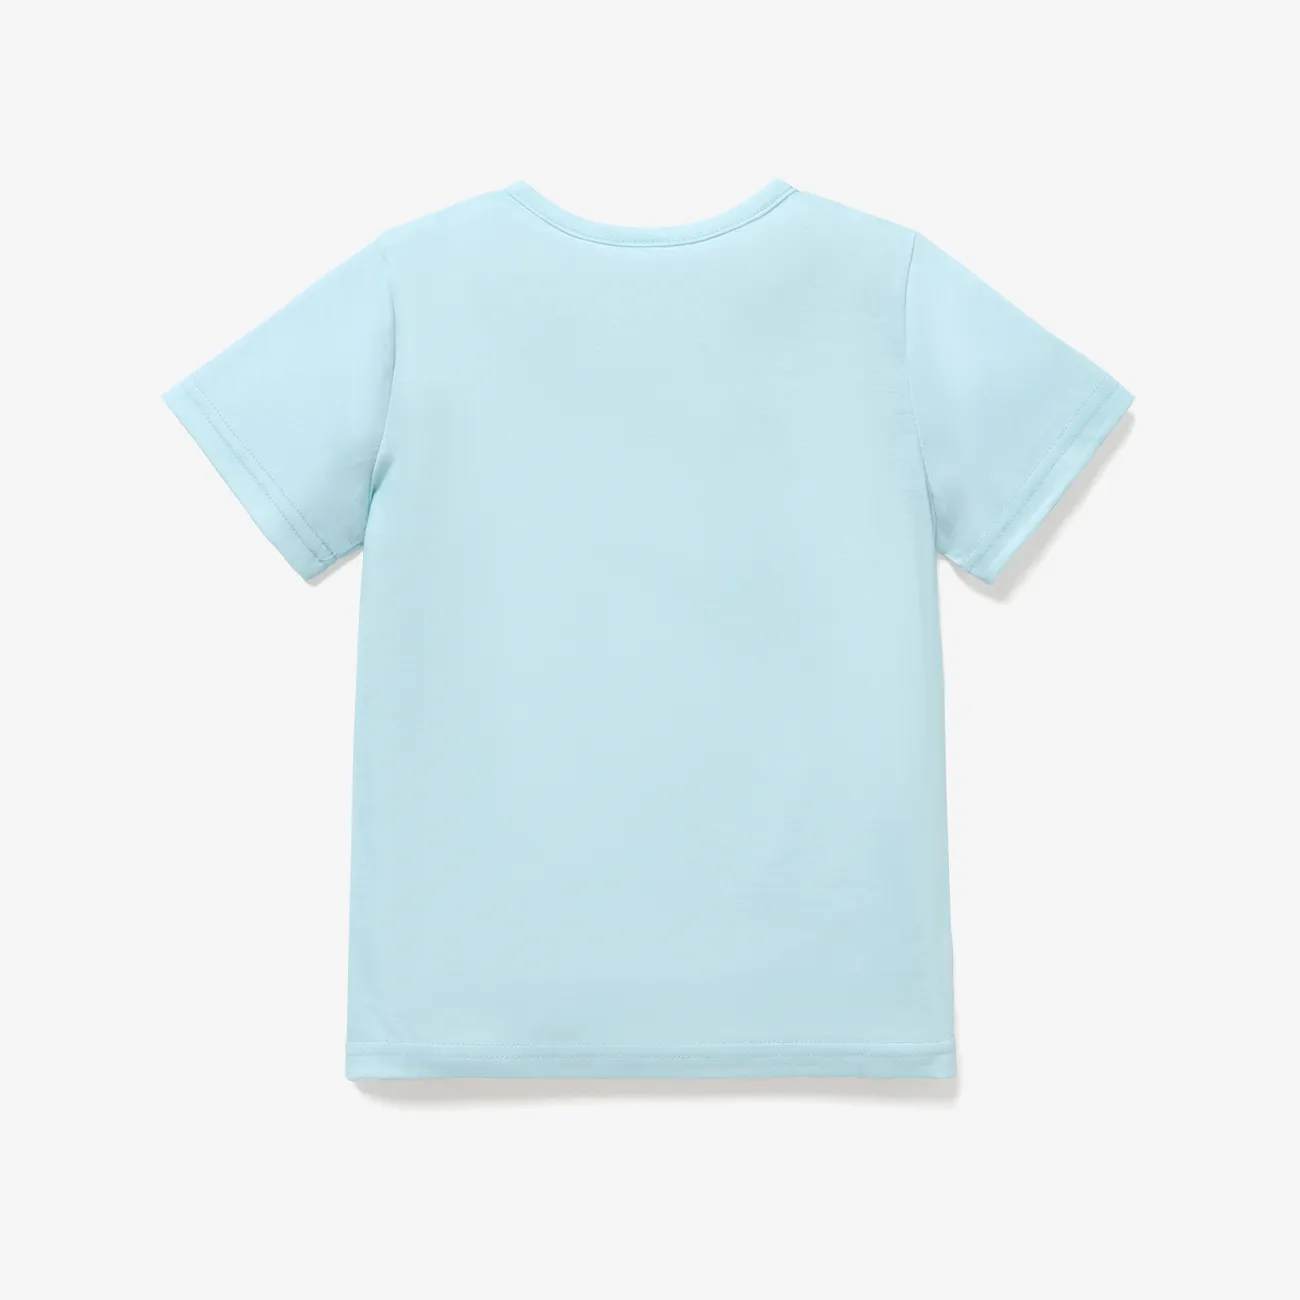 Pâques Enfants Fille Motifs animaux Manches courtes T-Shirt Bleu Clair big image 1